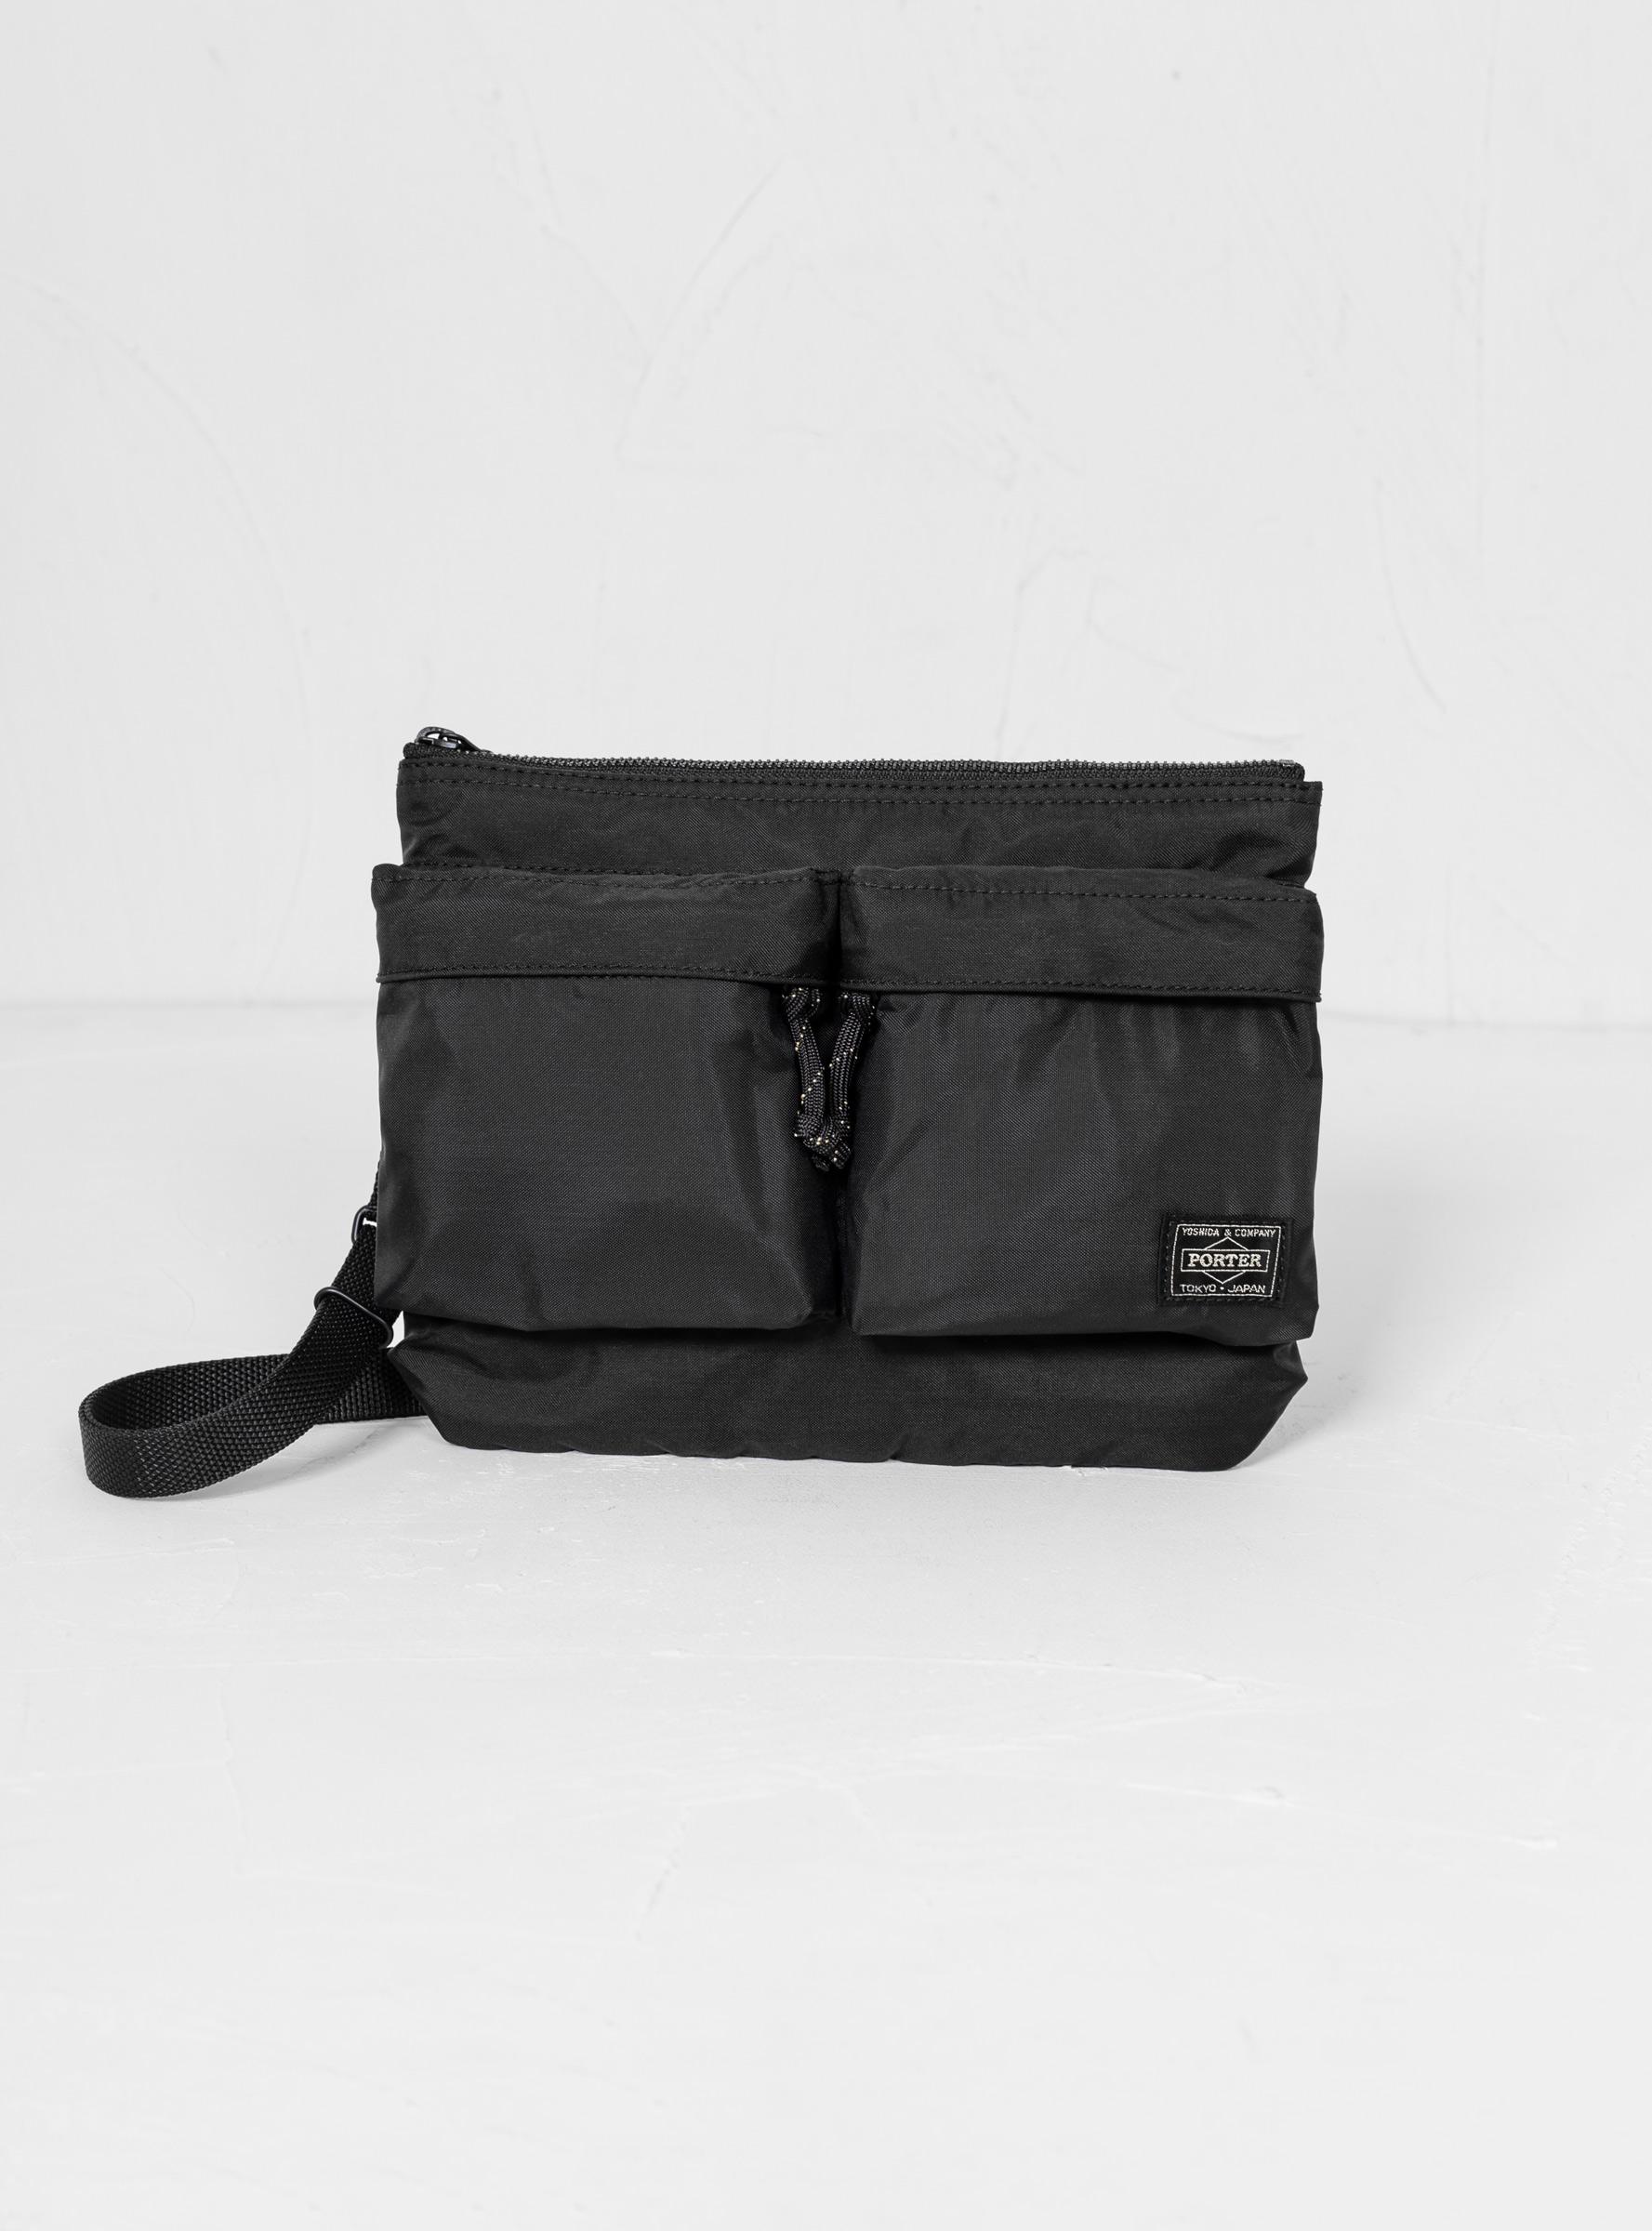 Porter-Yoshida and Co Force Shoulder Bag Black for Men